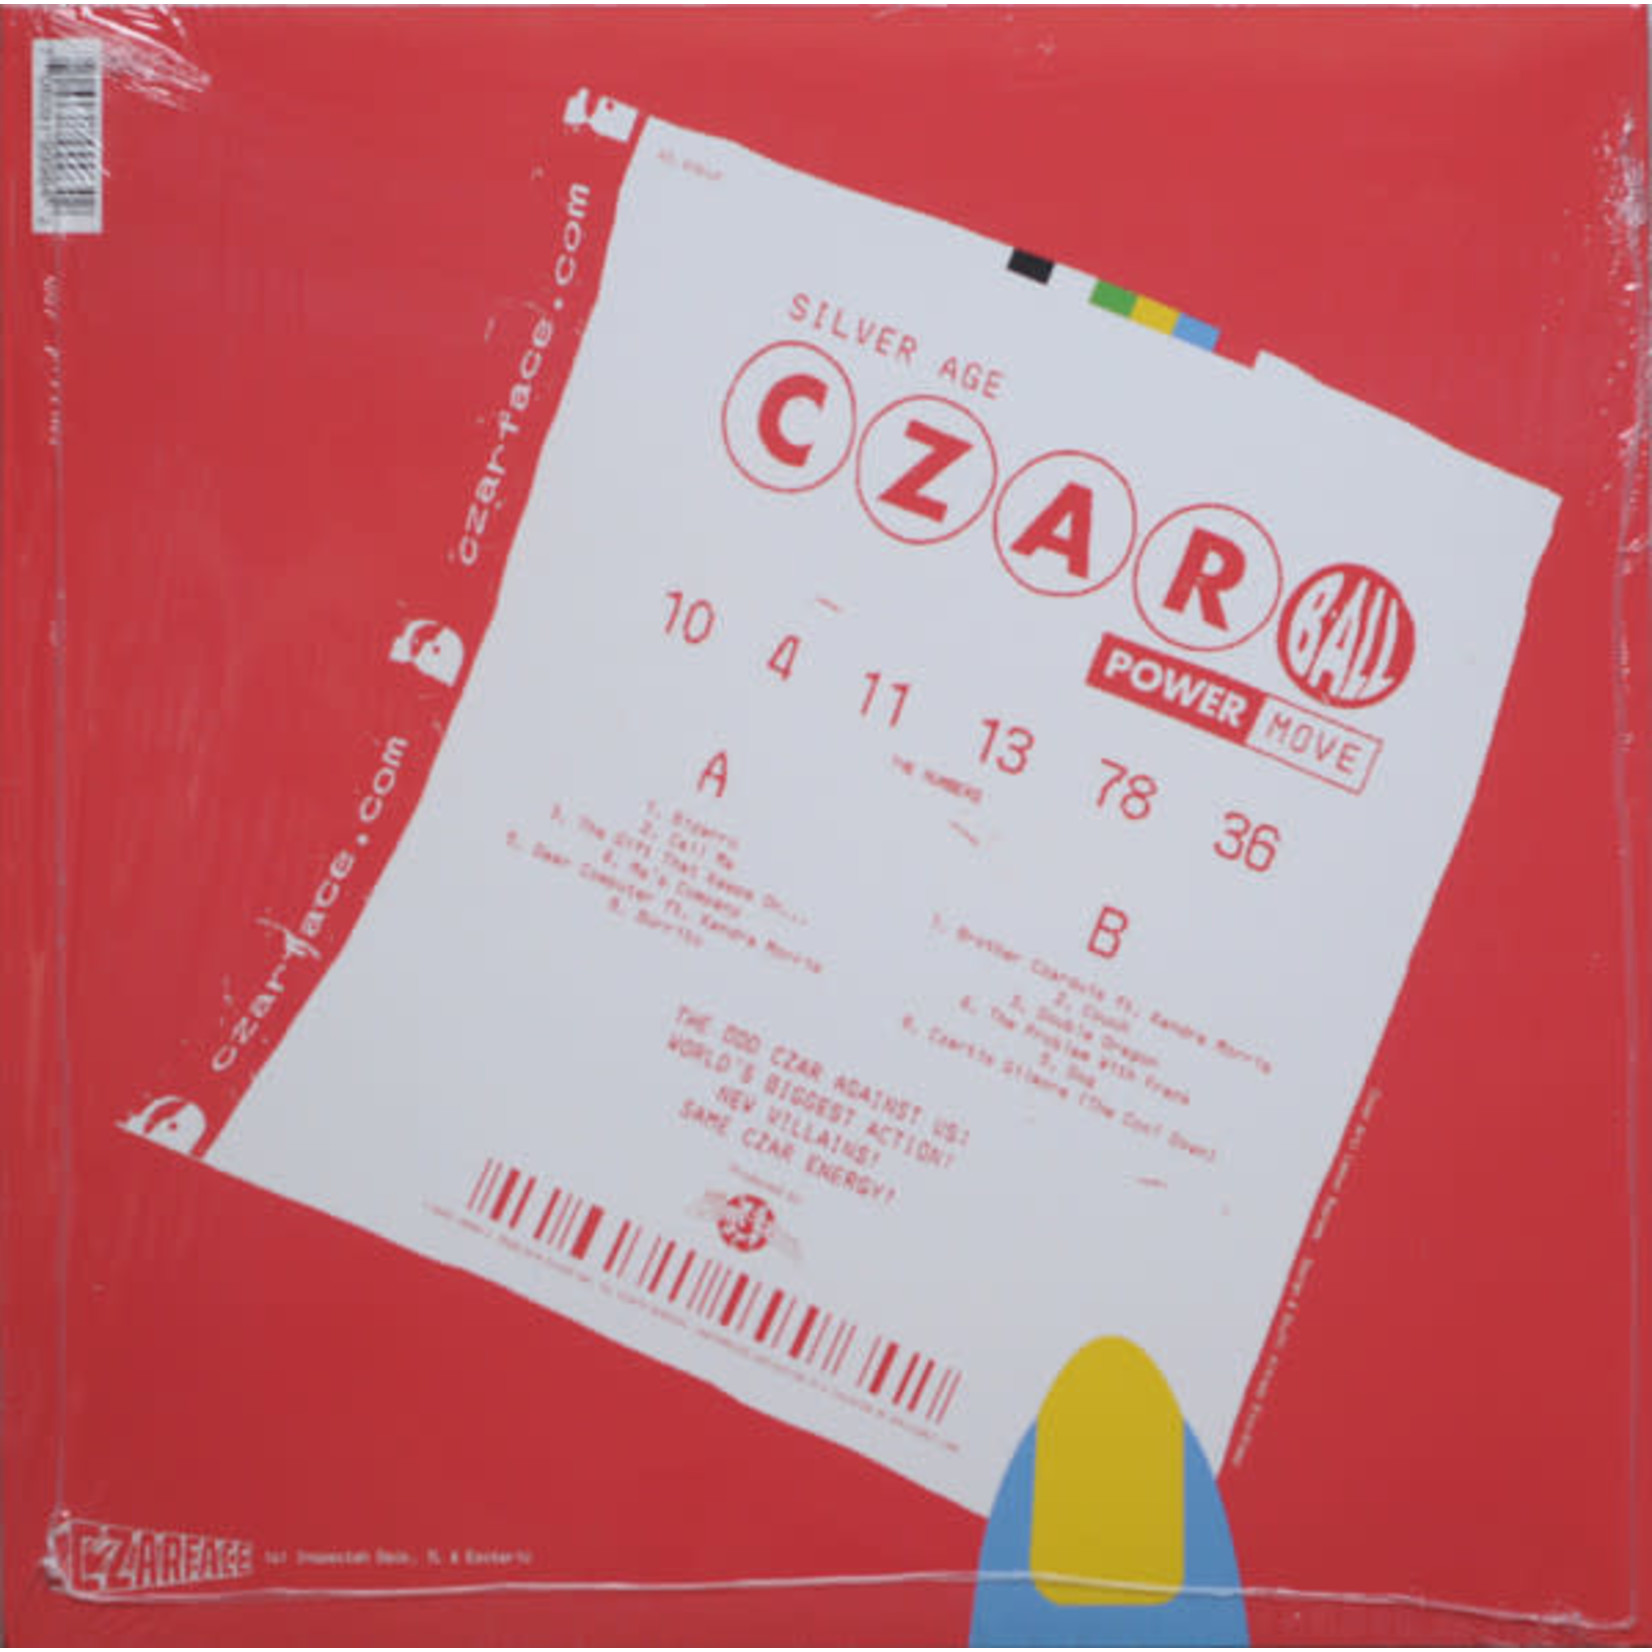 Czarface - The Odd Czar Against Us (LP)